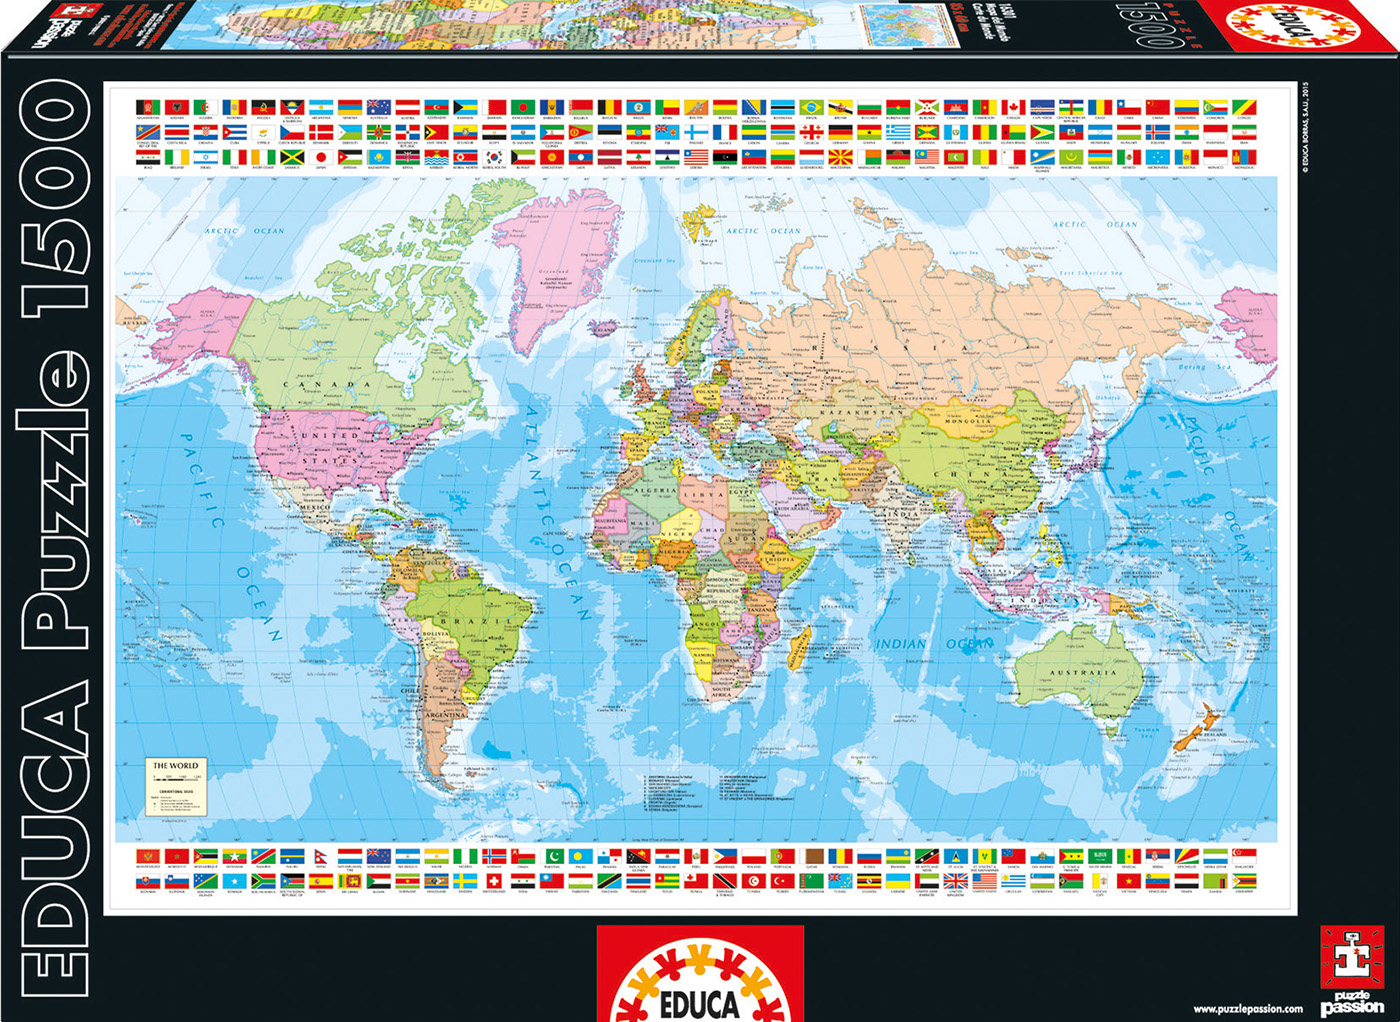 En Inapropiado el viento es fuerte Puzzles Educa 1500 Mapa del Mundo (Educa 16301) | Juguetes Juguetodo